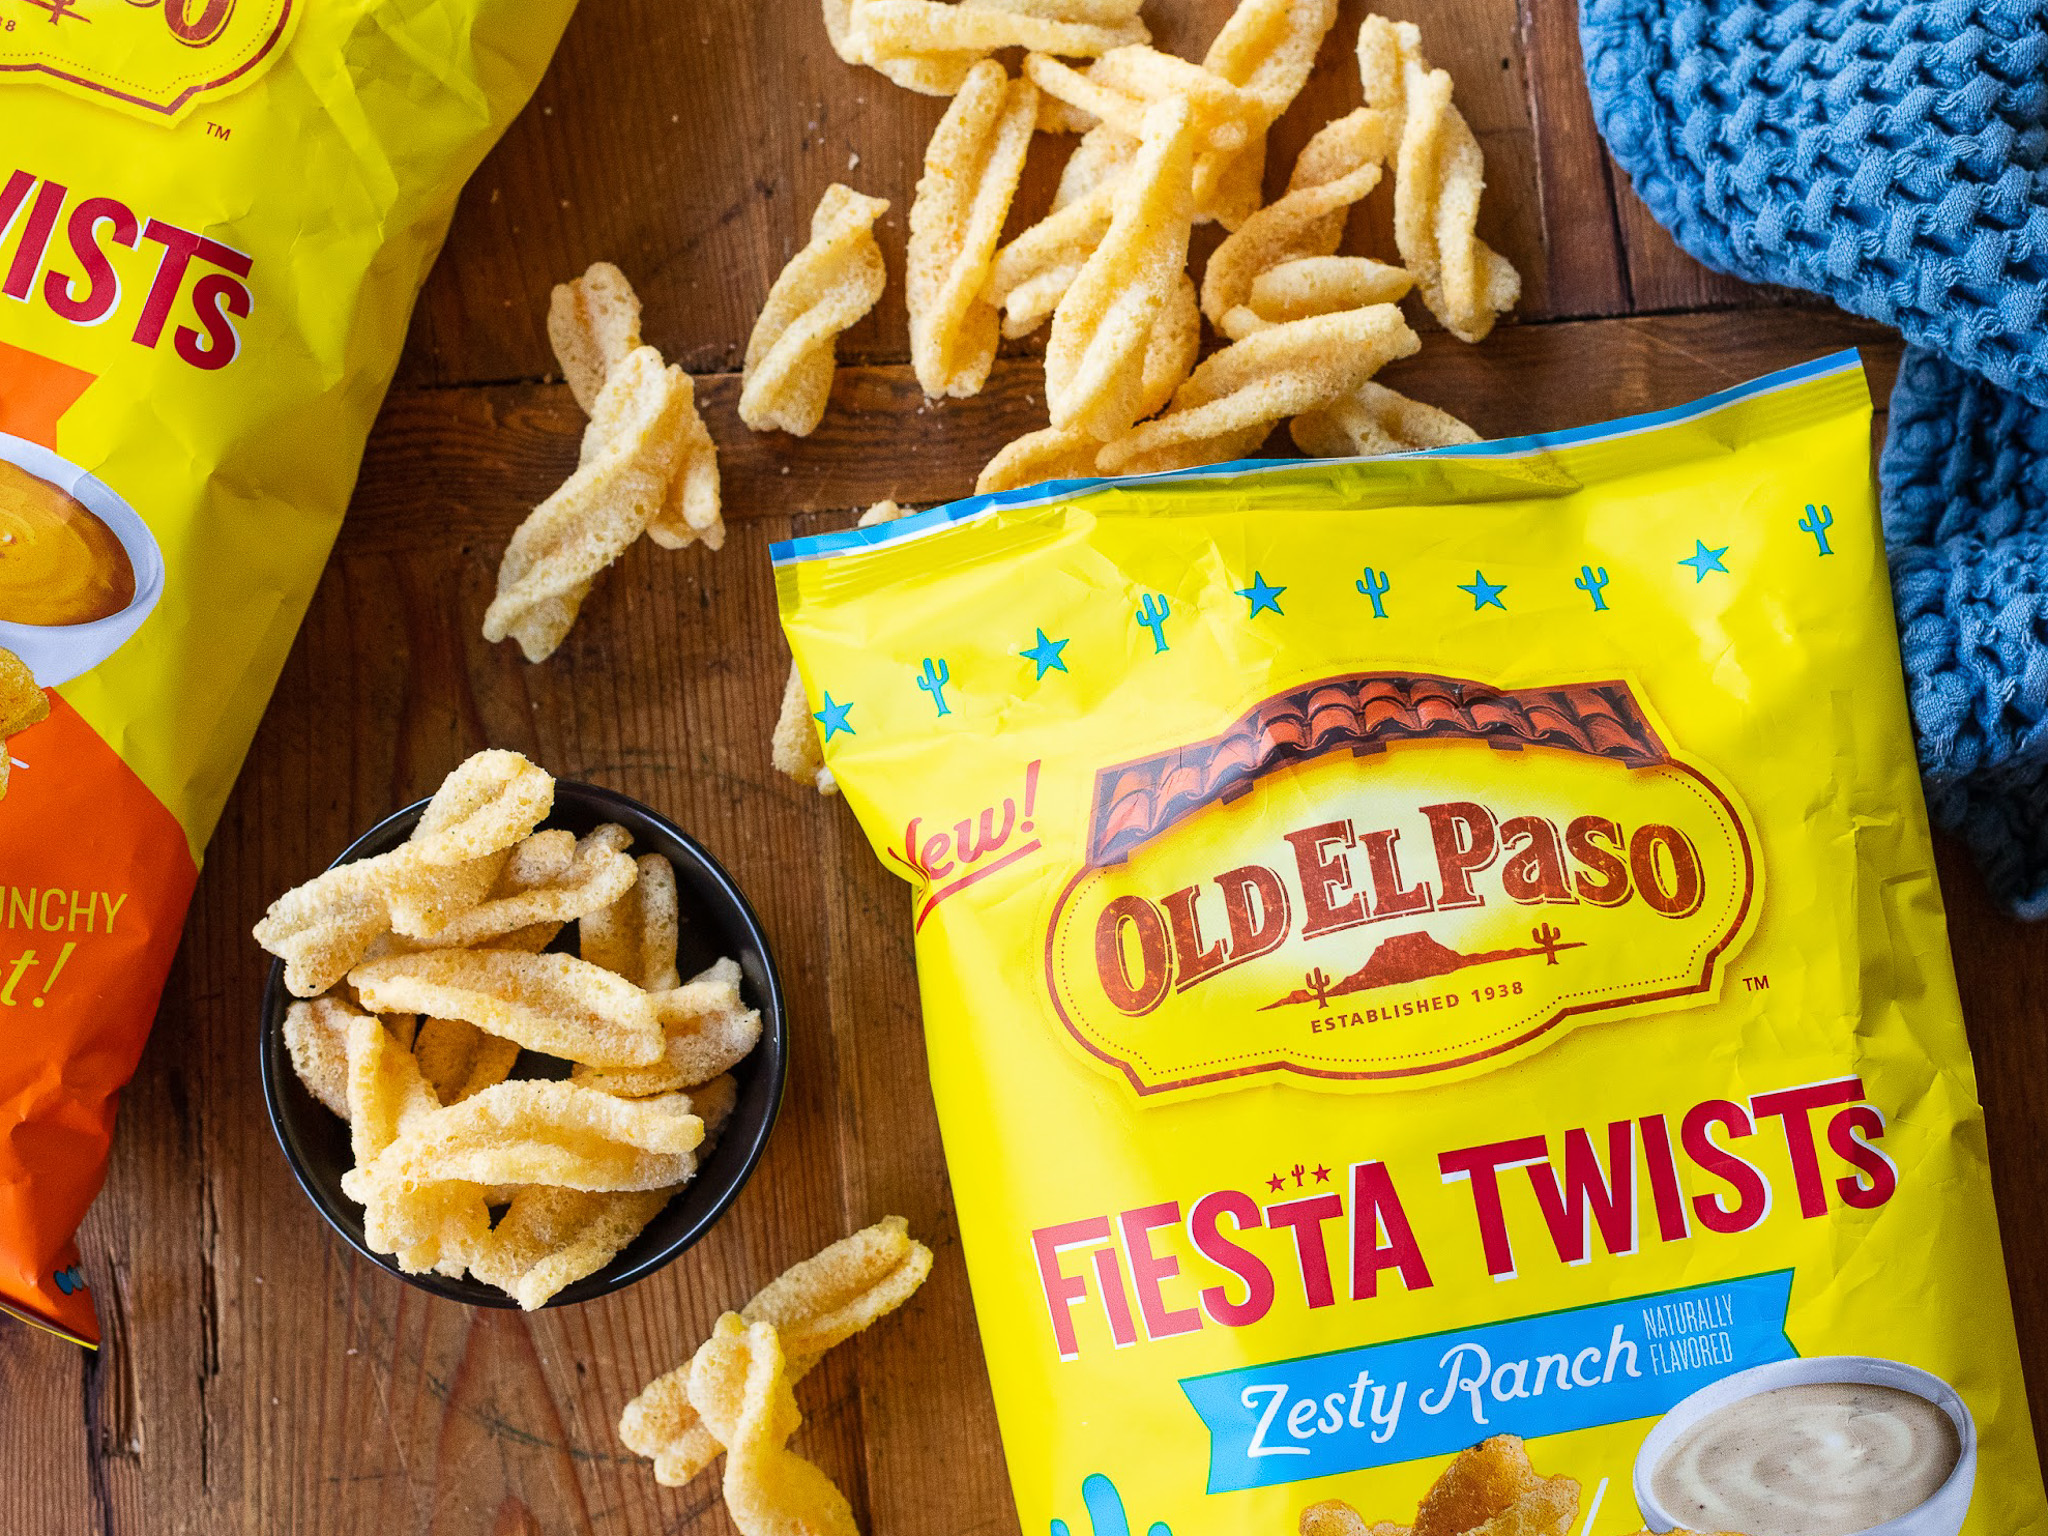 Old El Paso Zesty Ranch Fiesta Twists Crispy Corn Snacks Chips Bag, 5.5 oz  - Kroger